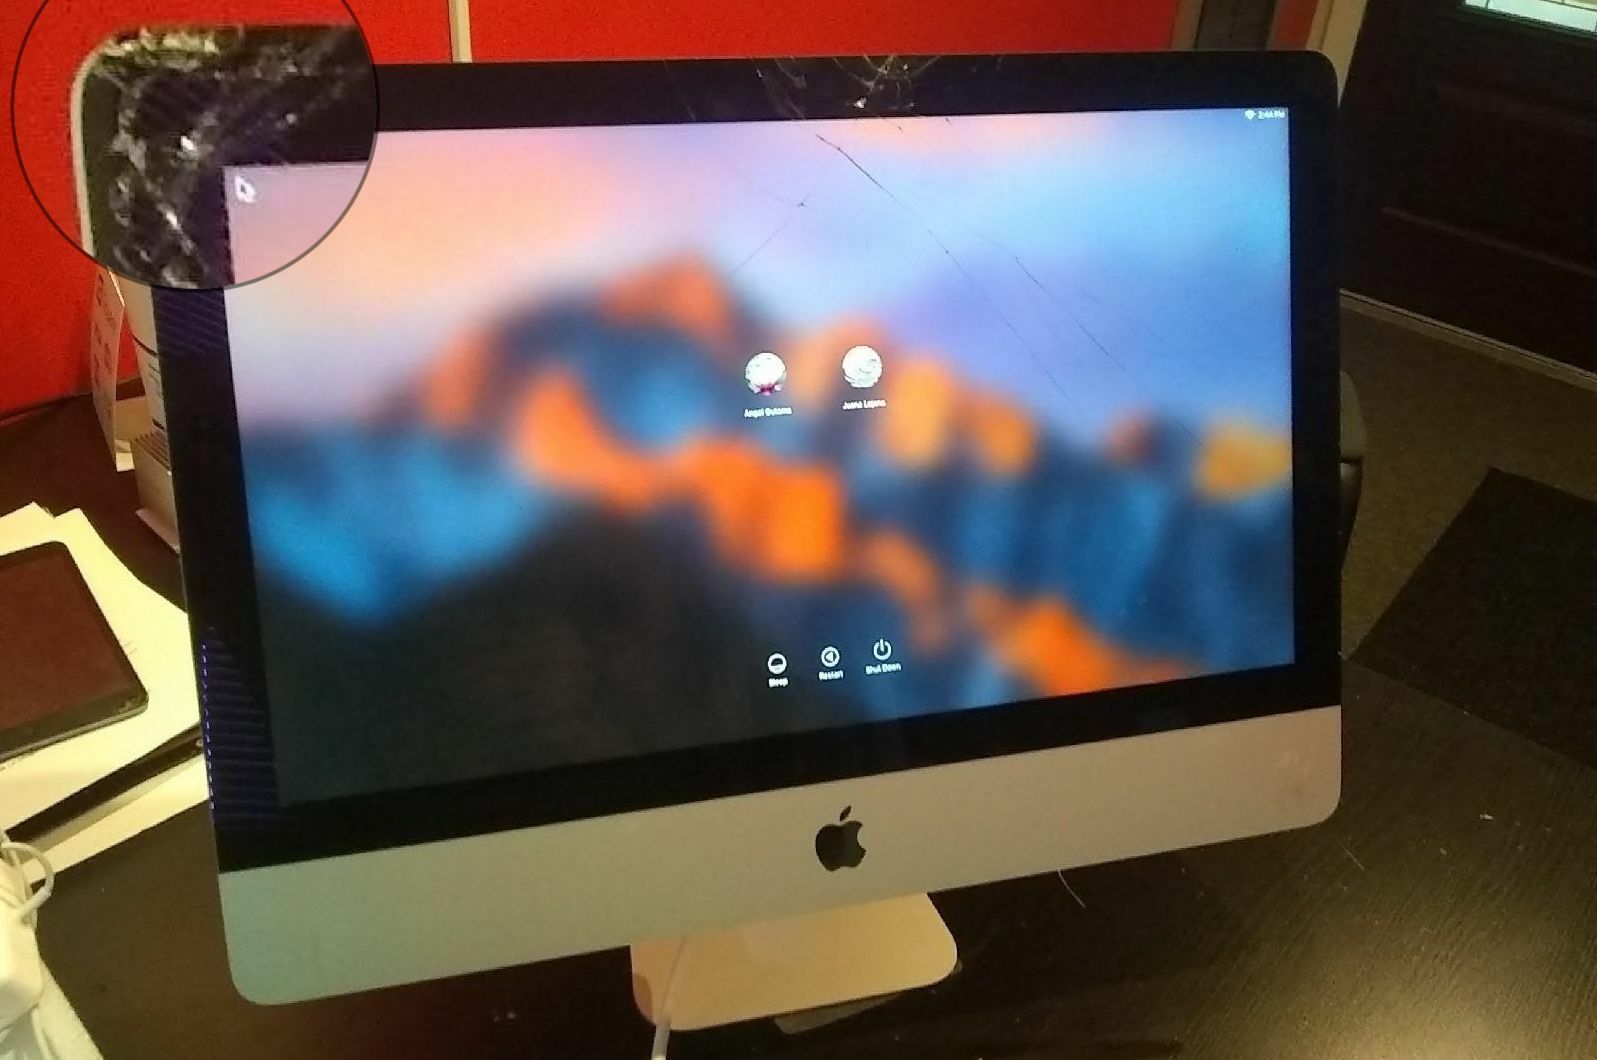 iMac Ekran Değişimi